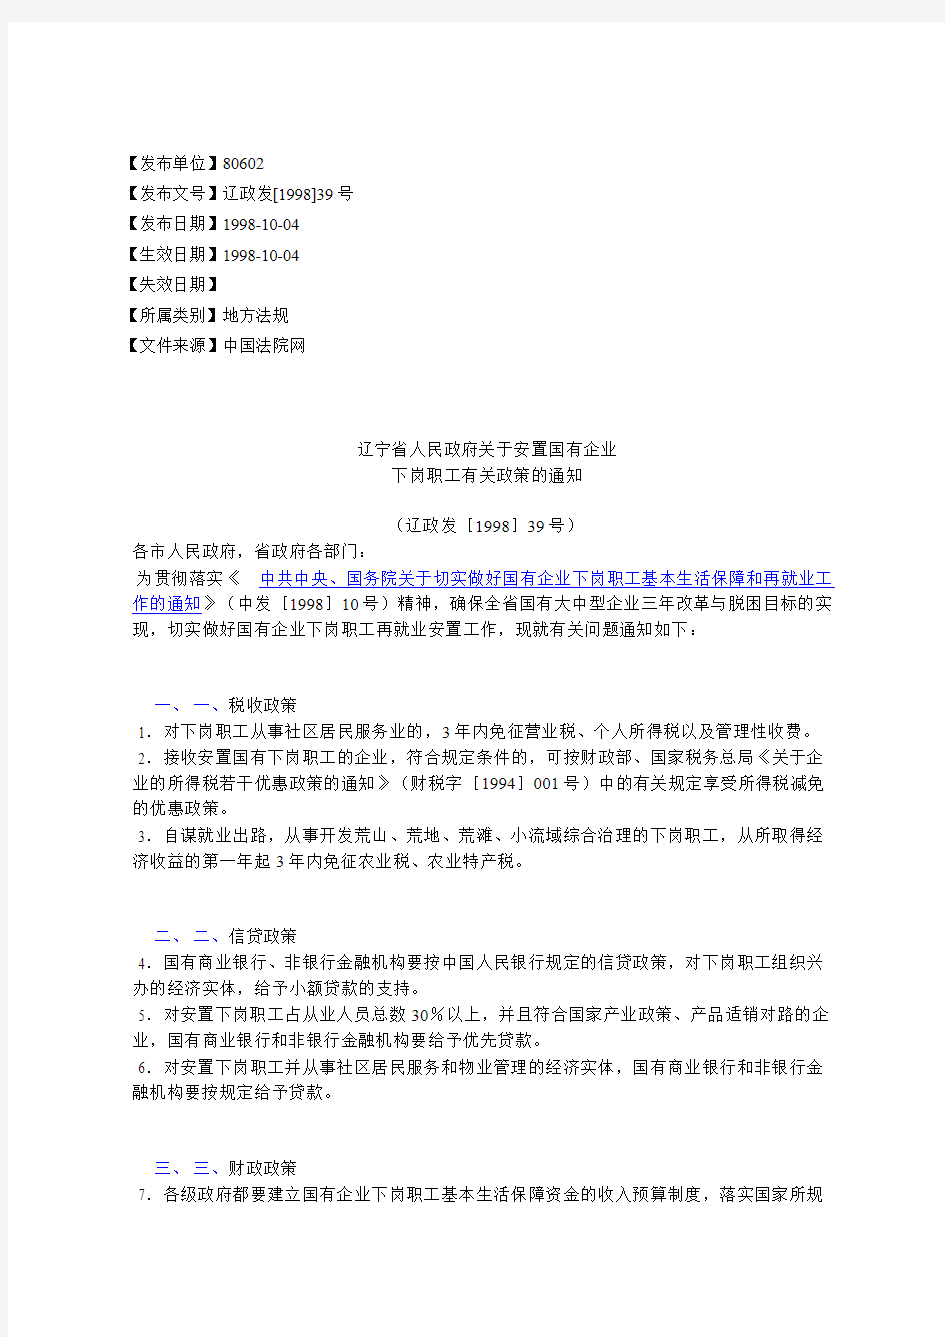 辽宁省人民政府关于安置国有企业下岗职工有关政策的通知